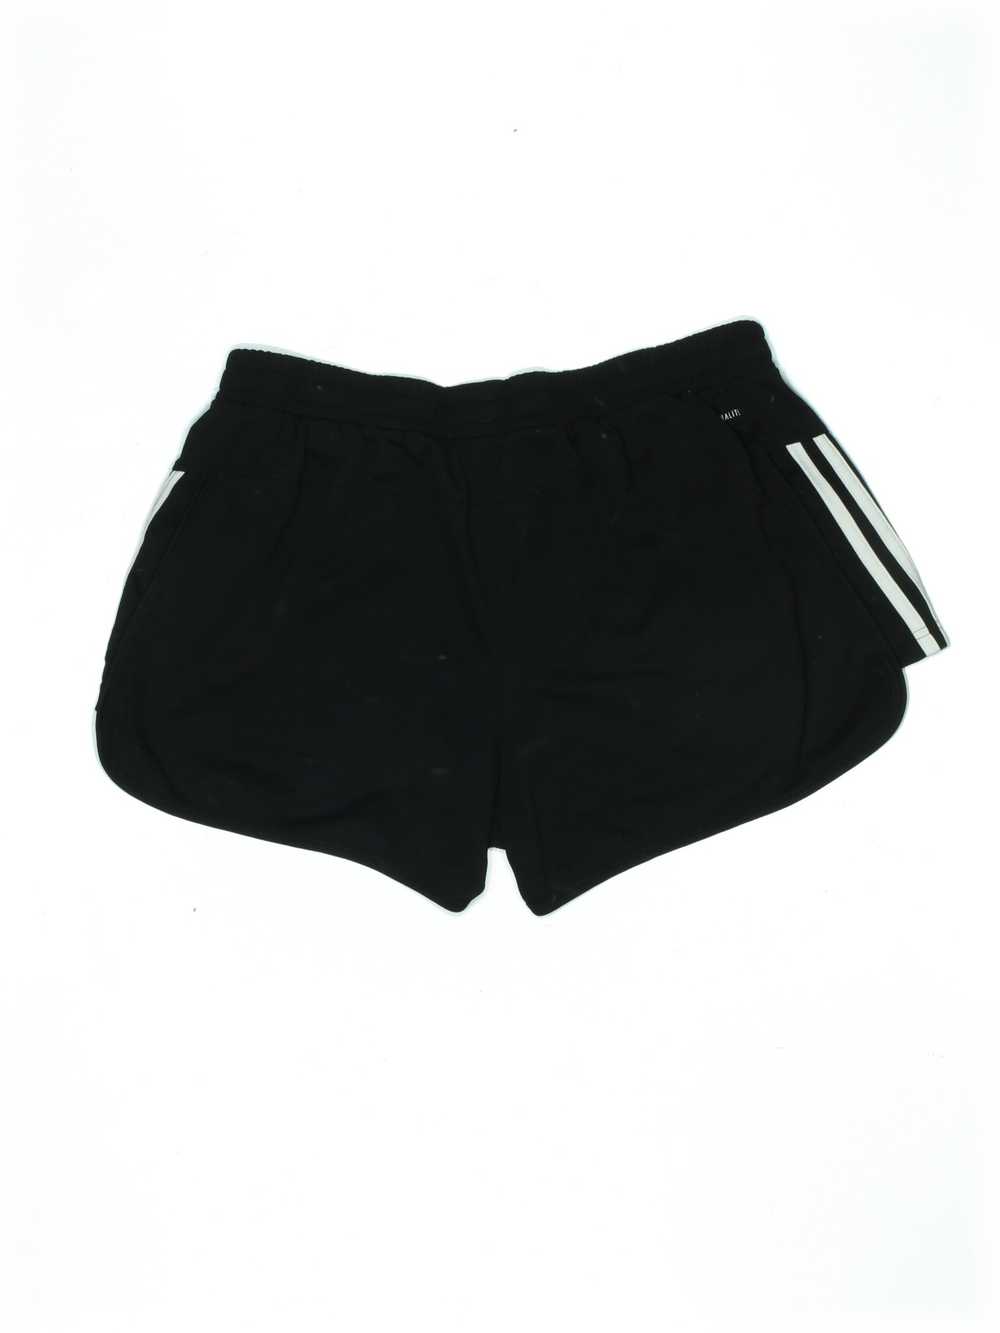 Adidas Women Black Athletic Shorts L - image 2